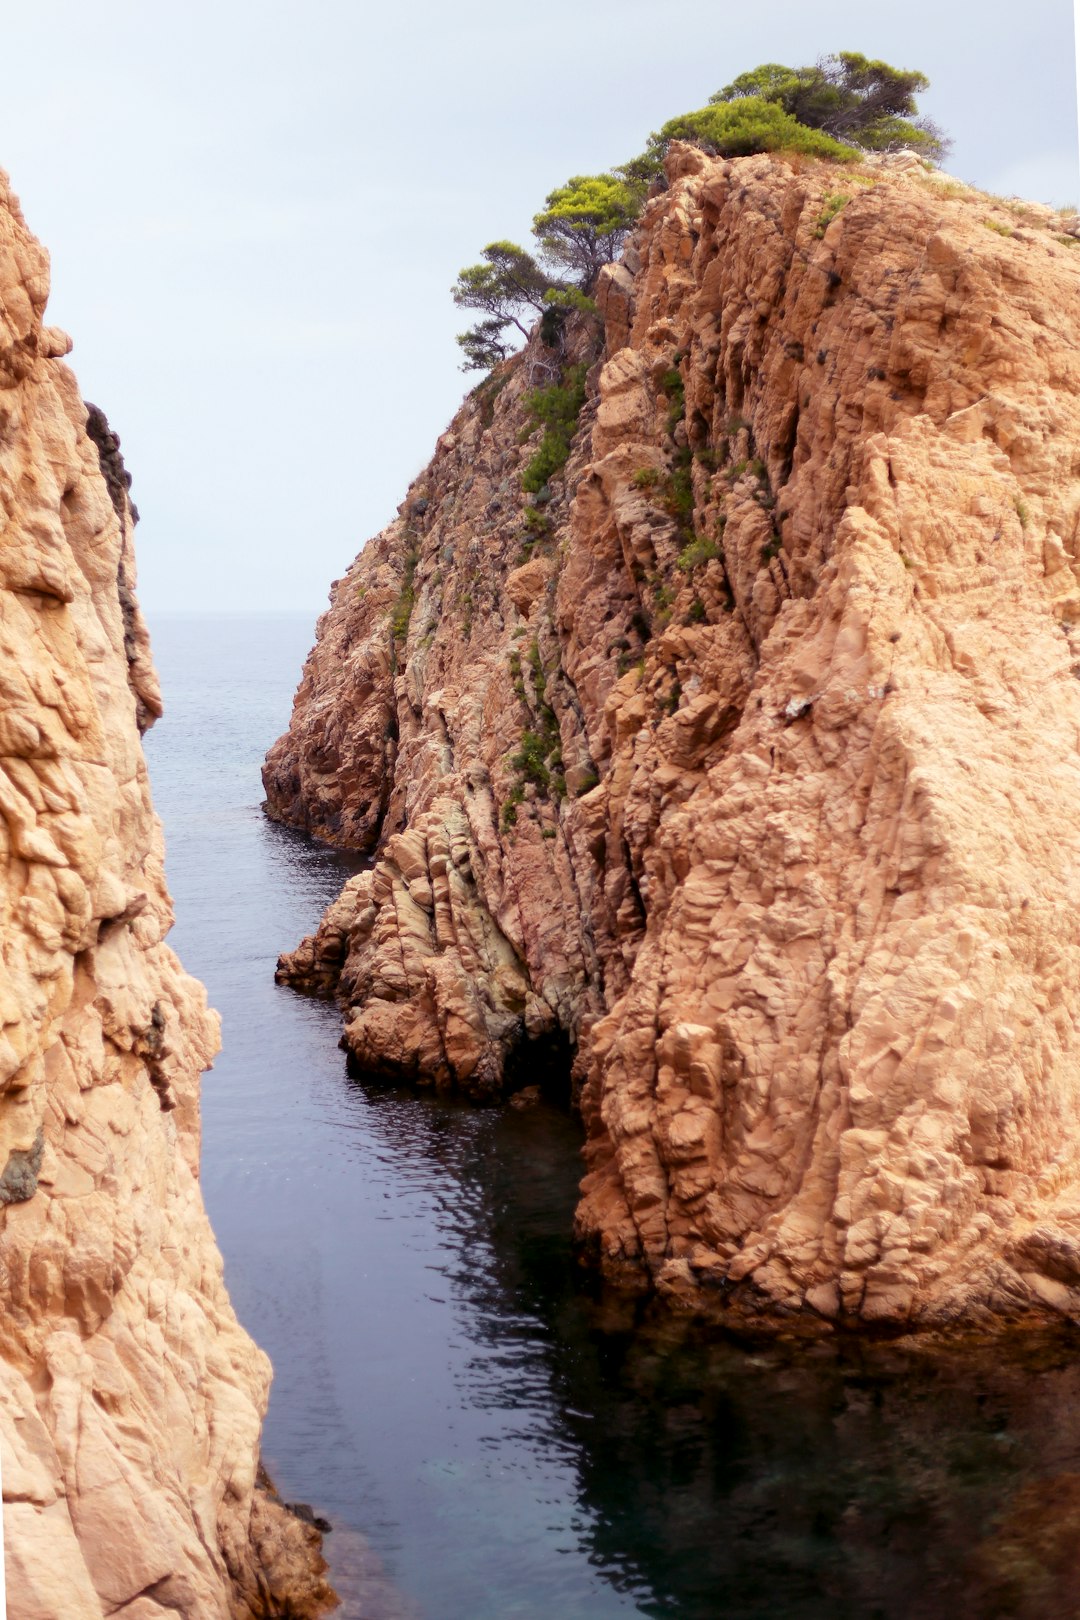 Cliff photo spot Costa Brava Montañas de Begur